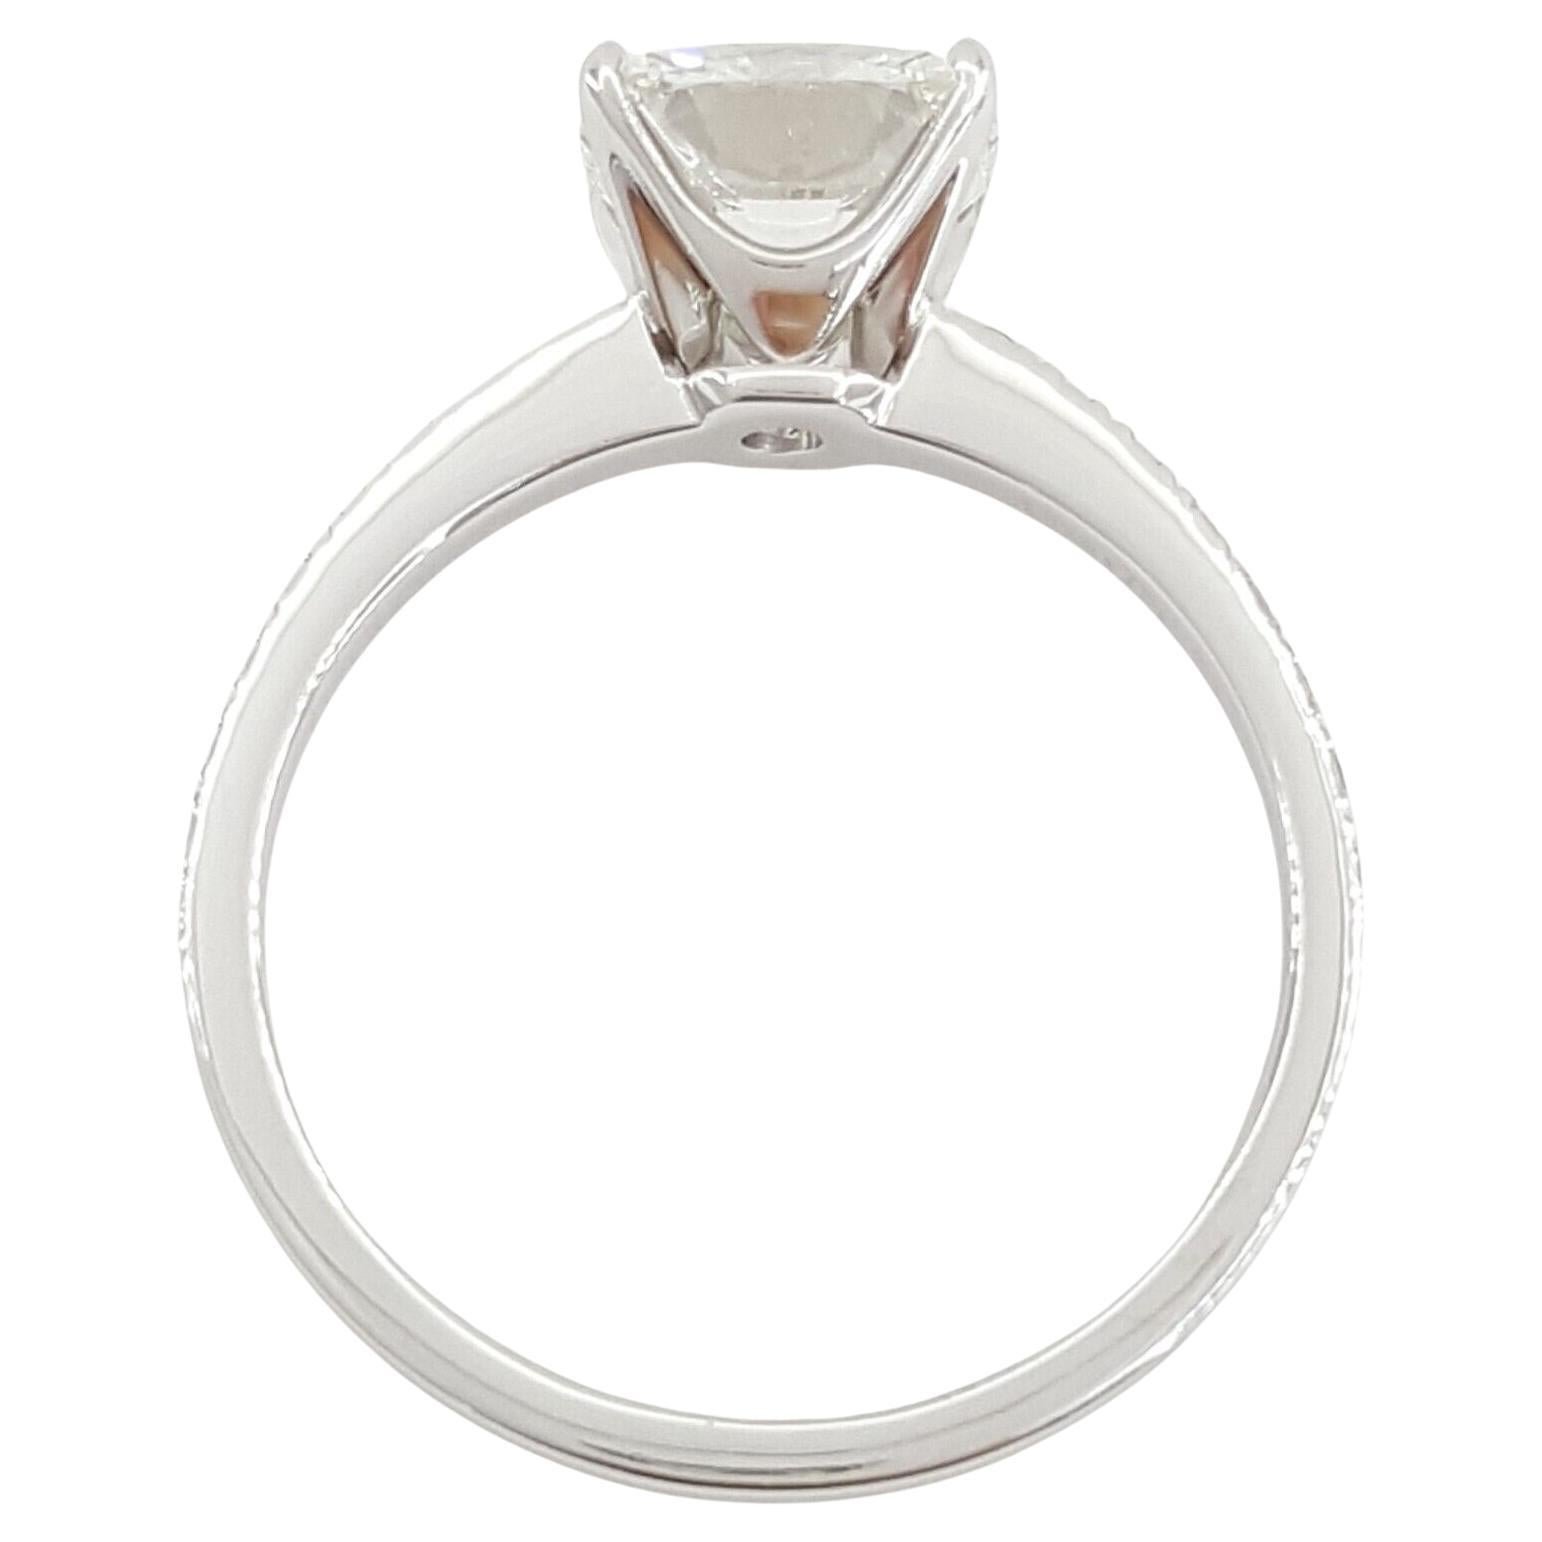 Tiffany & Co. Platin Soleste® 1,4 Karat runder Diamant Halo Verlobungsring und Ehering Set.

Beide Ringe wiegen 6,9 Gramm, Größe 4,5, der Mittelstein ist ein natürlicher runder Diamant im Brillantschliff mit einem Gewicht von 1,00 ct, Farbe G,